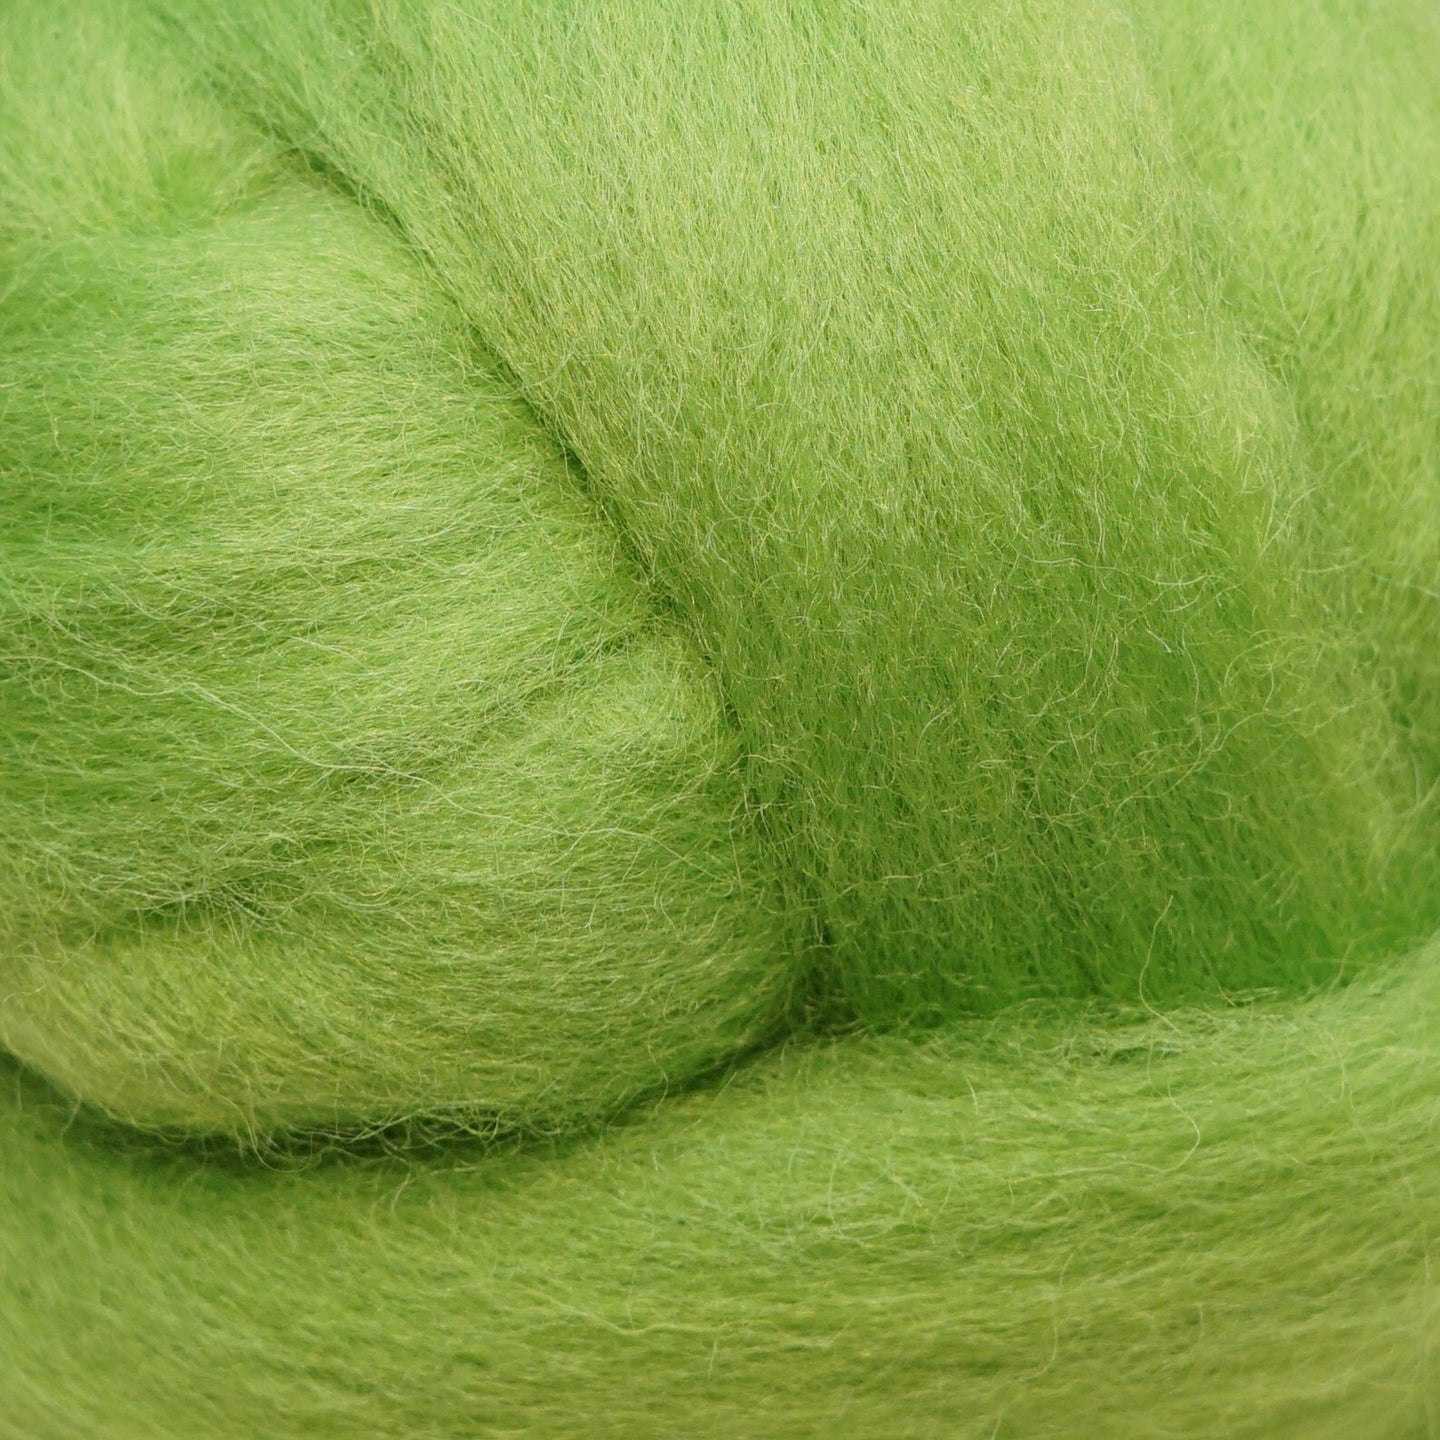 Lime green Corriedale Wool Roving